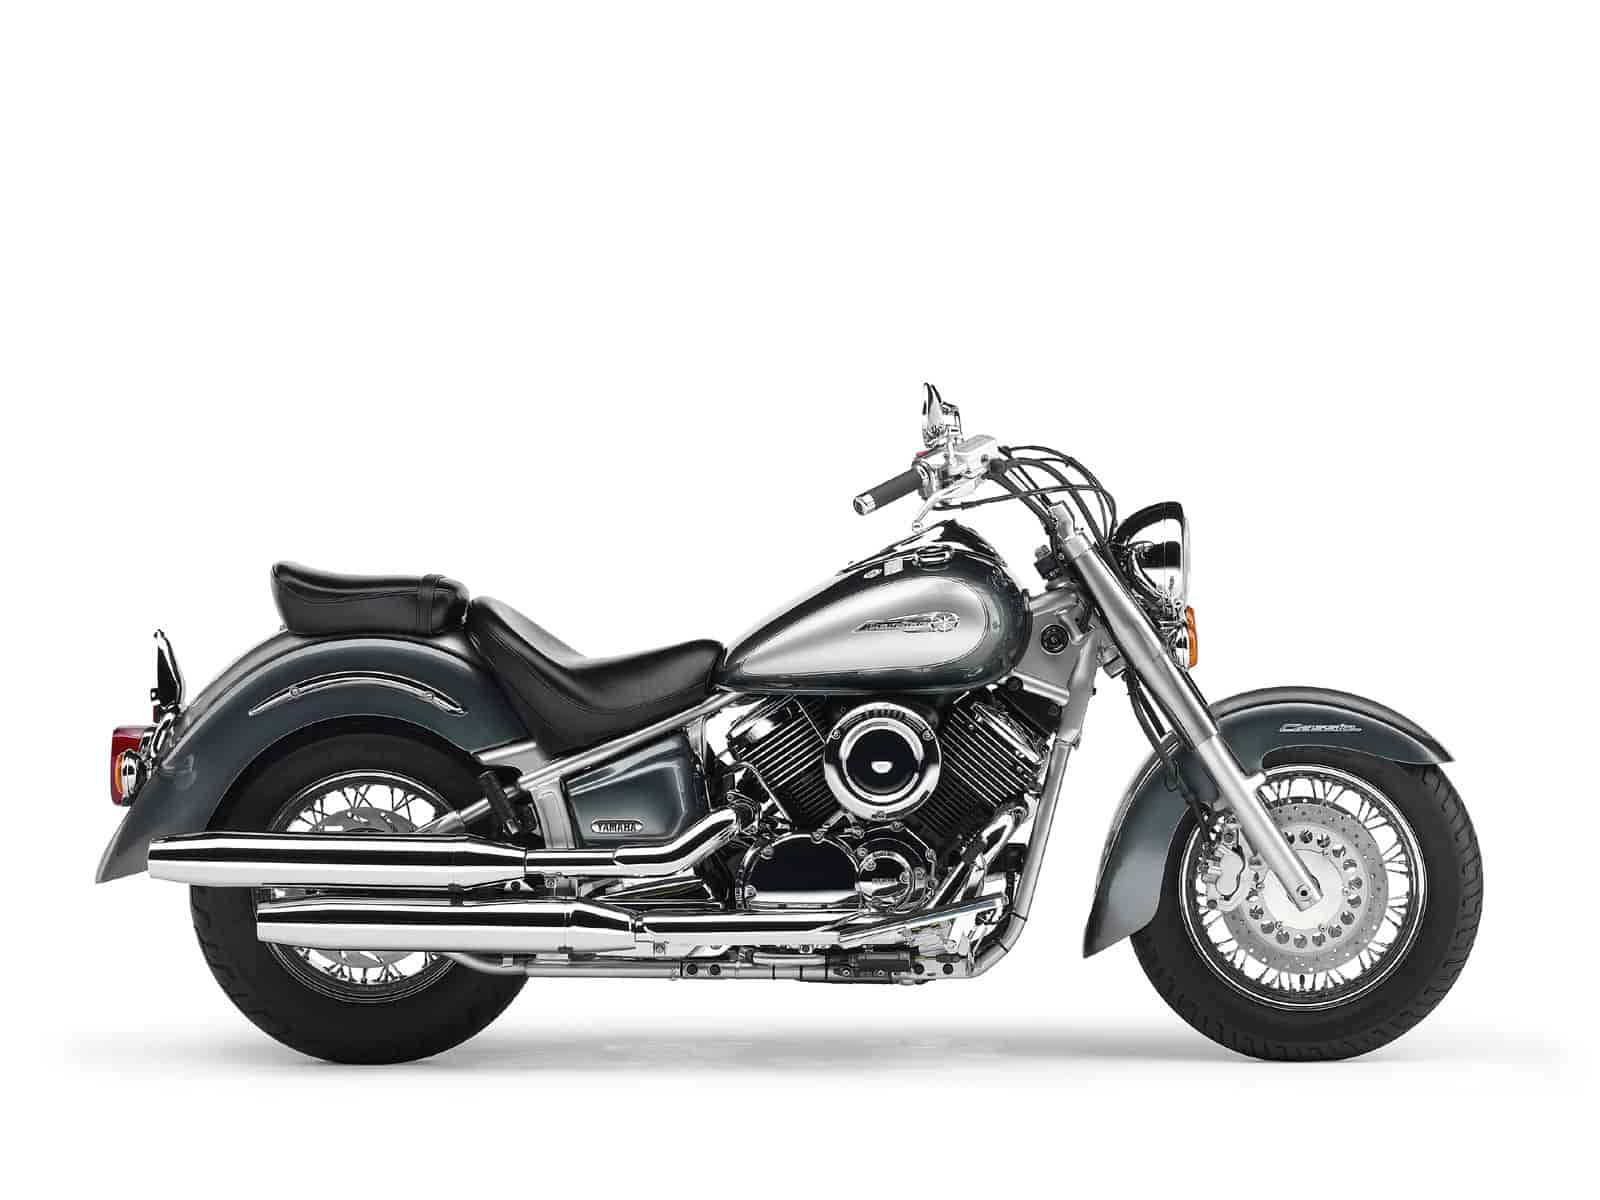 Обзор мотоцикла Yamaha Drag Star (Ямаха Драг Стар) 1100